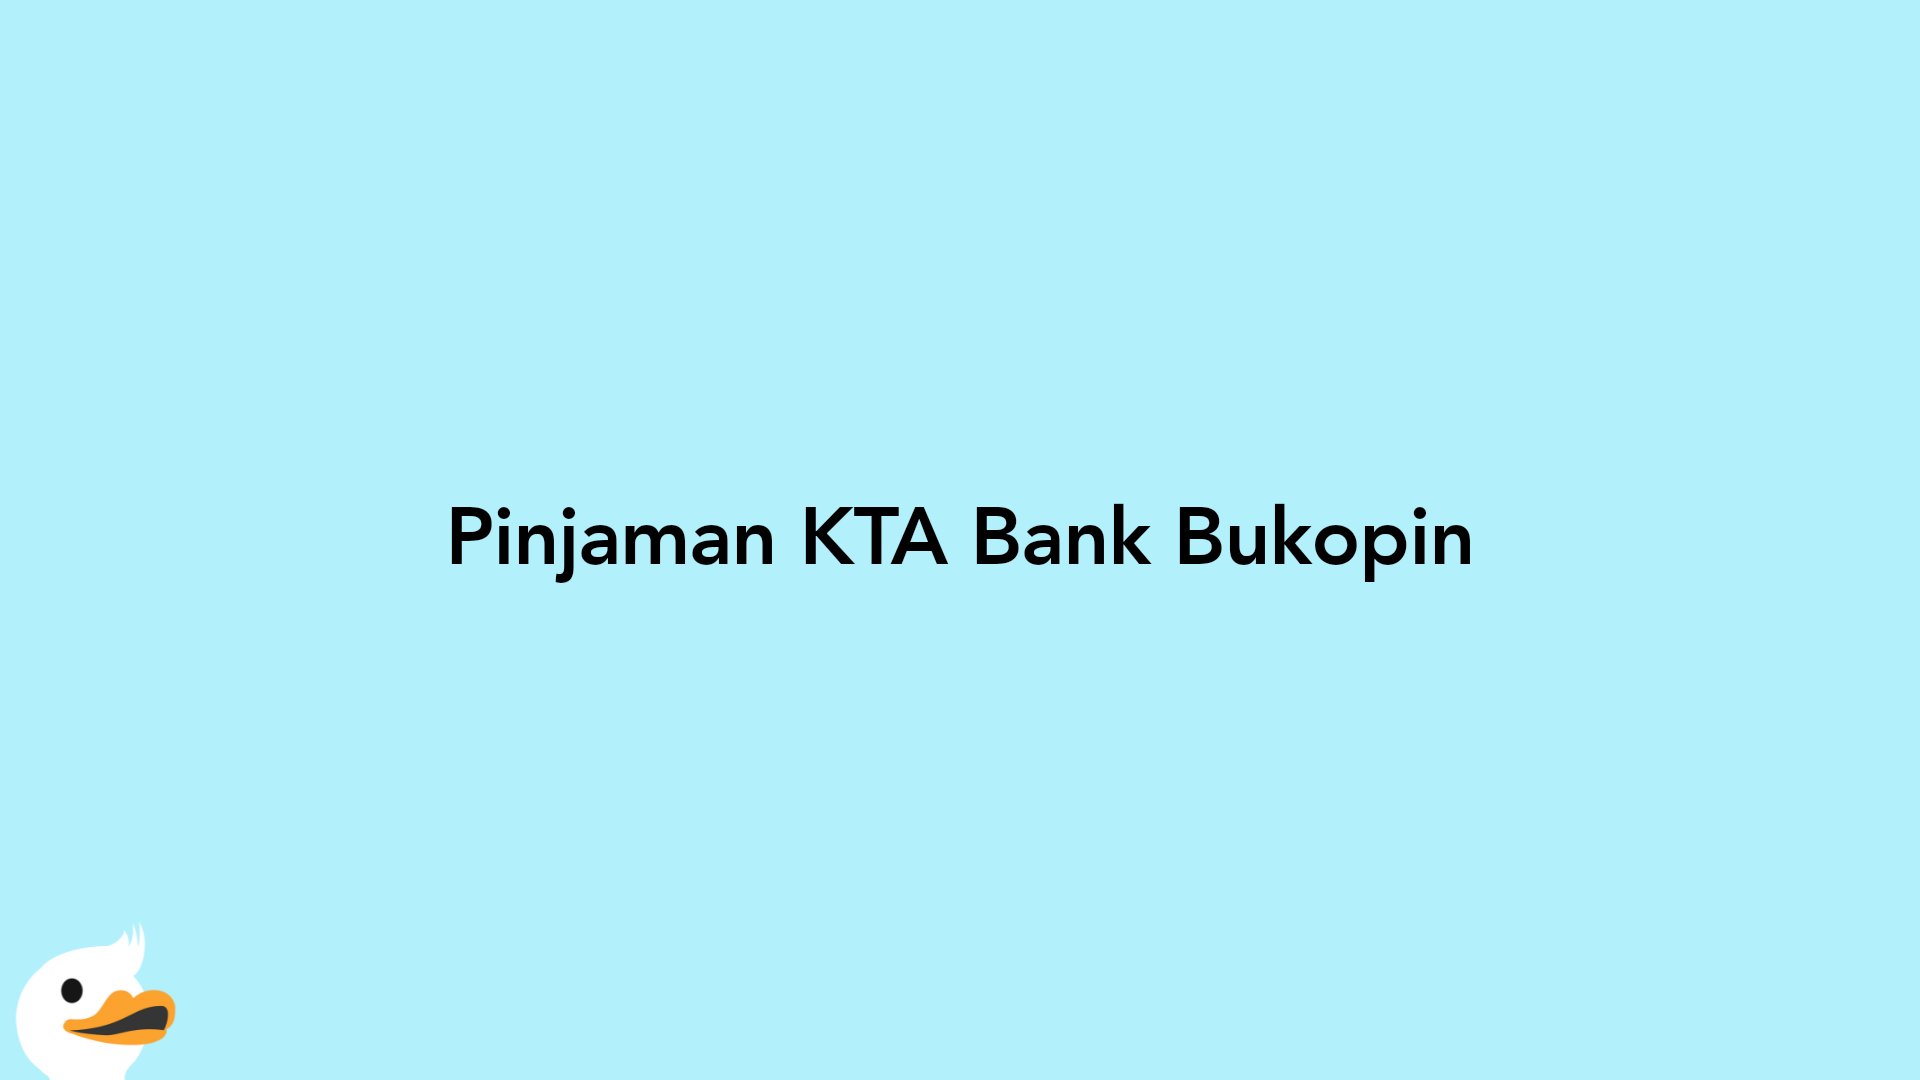 Pinjaman KTA Bank Bukopin